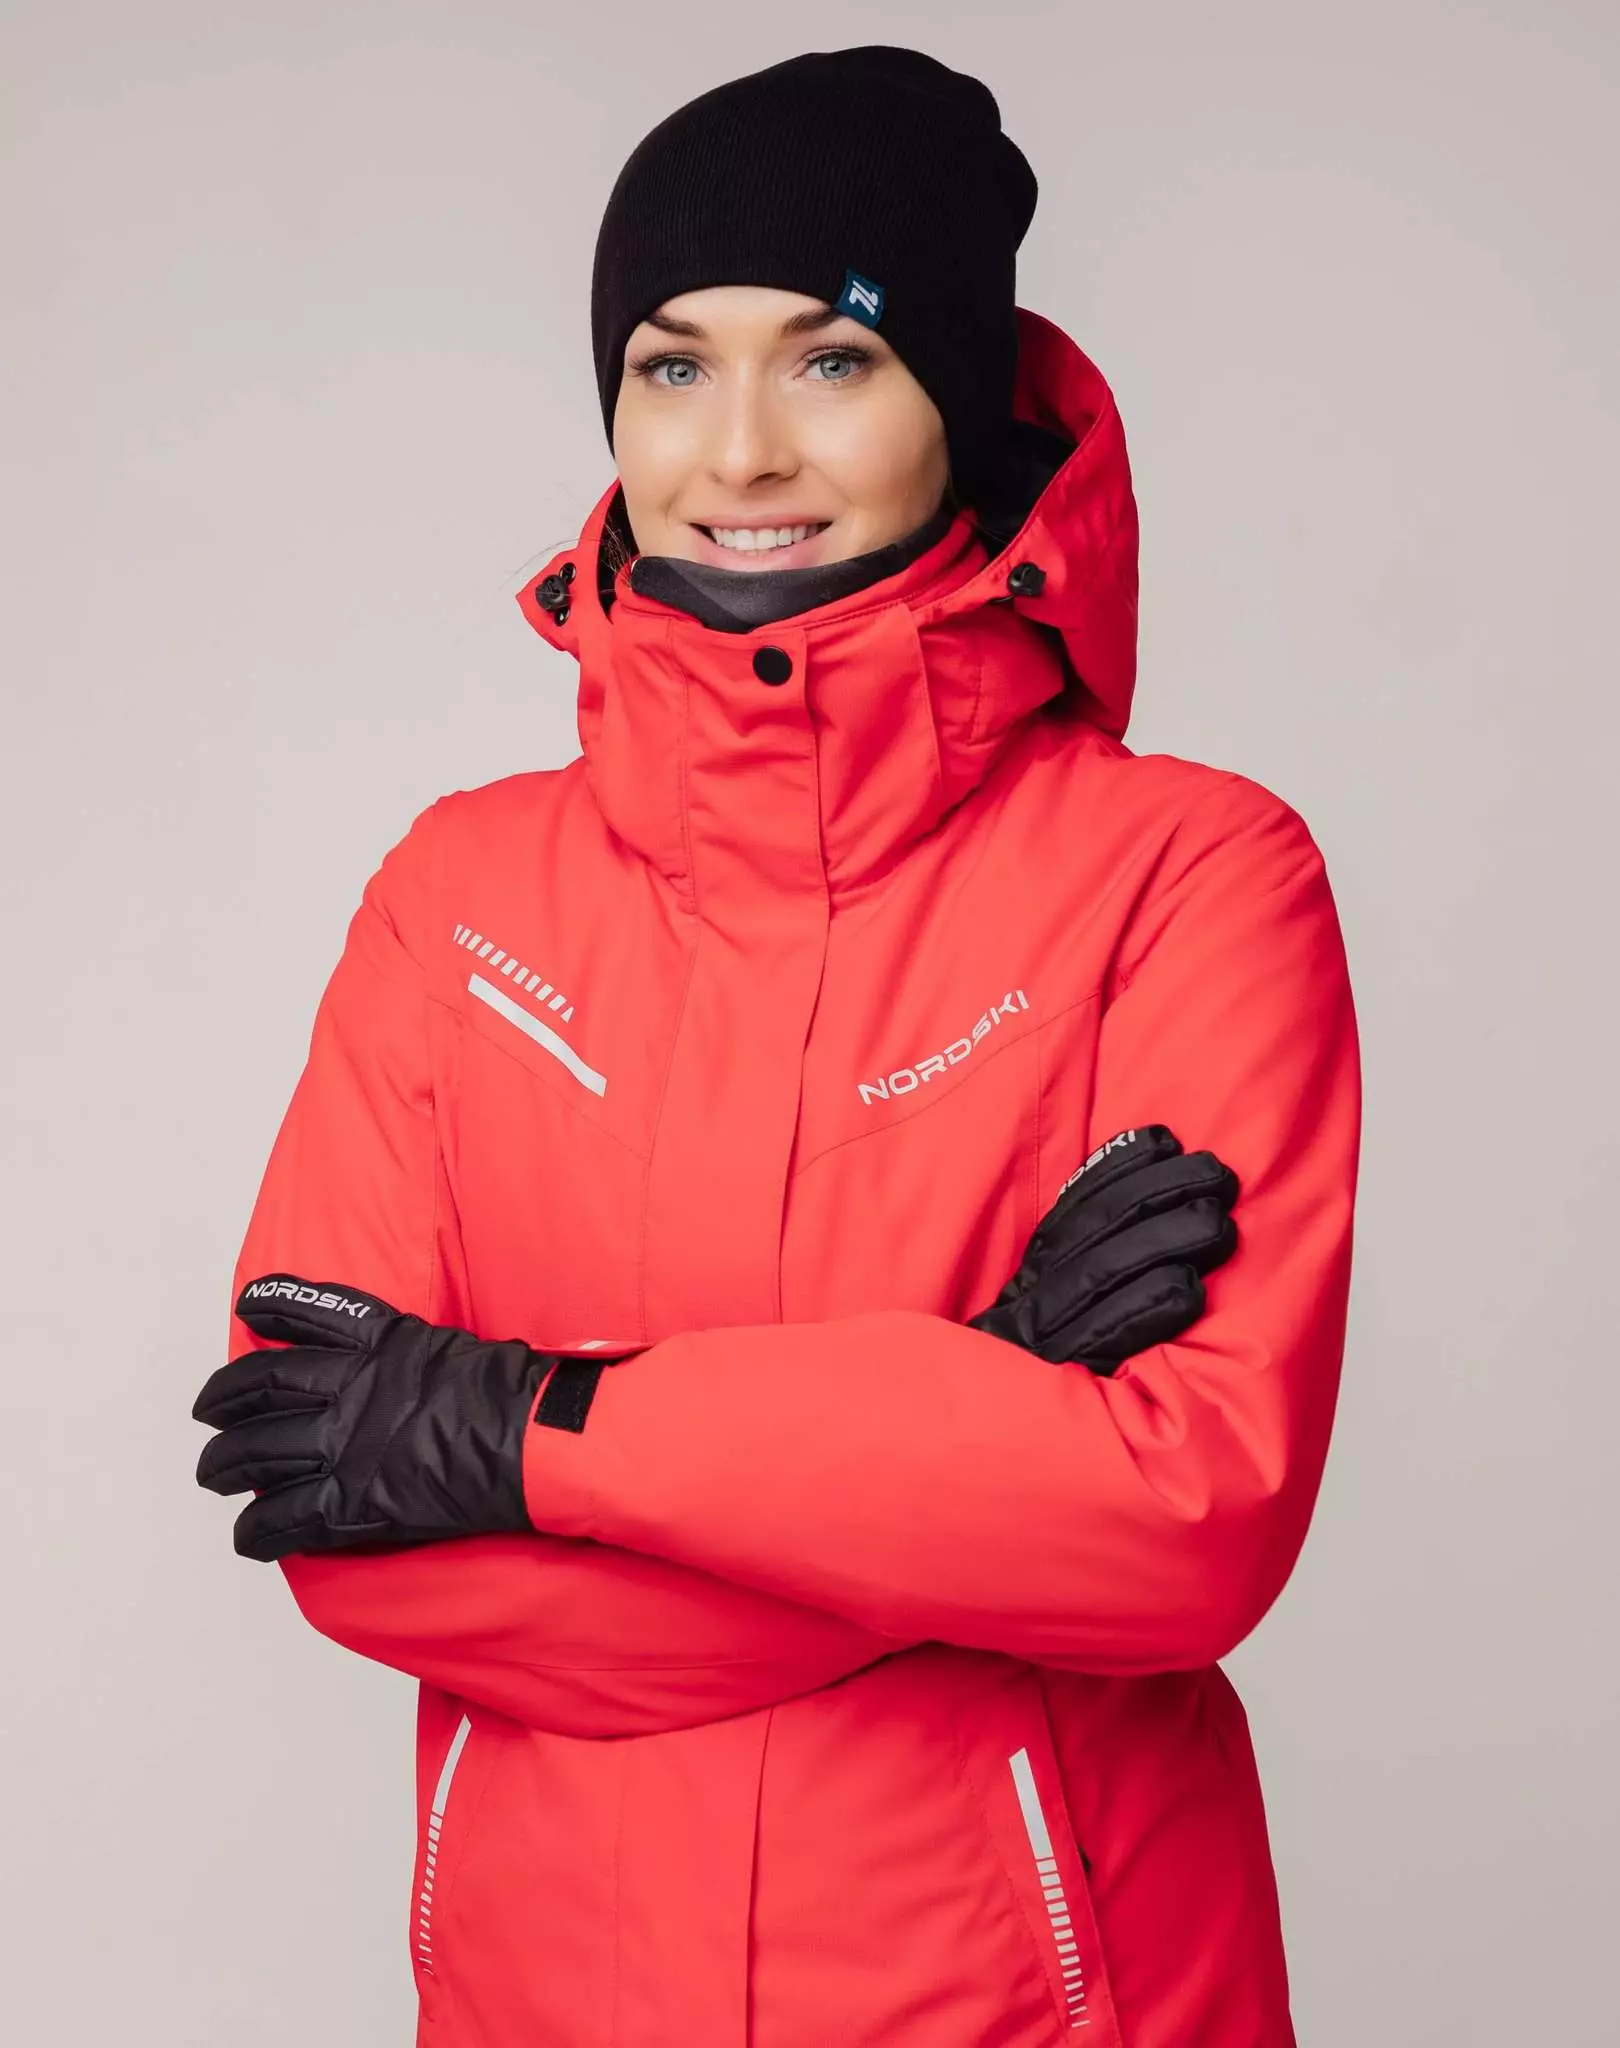 Skidjacka: Women's Winter Jacket för längdskidåkning, uppvärmning av barn och vuxna skidåkare. Hur man väljer för skridskoåkning? 20201_25